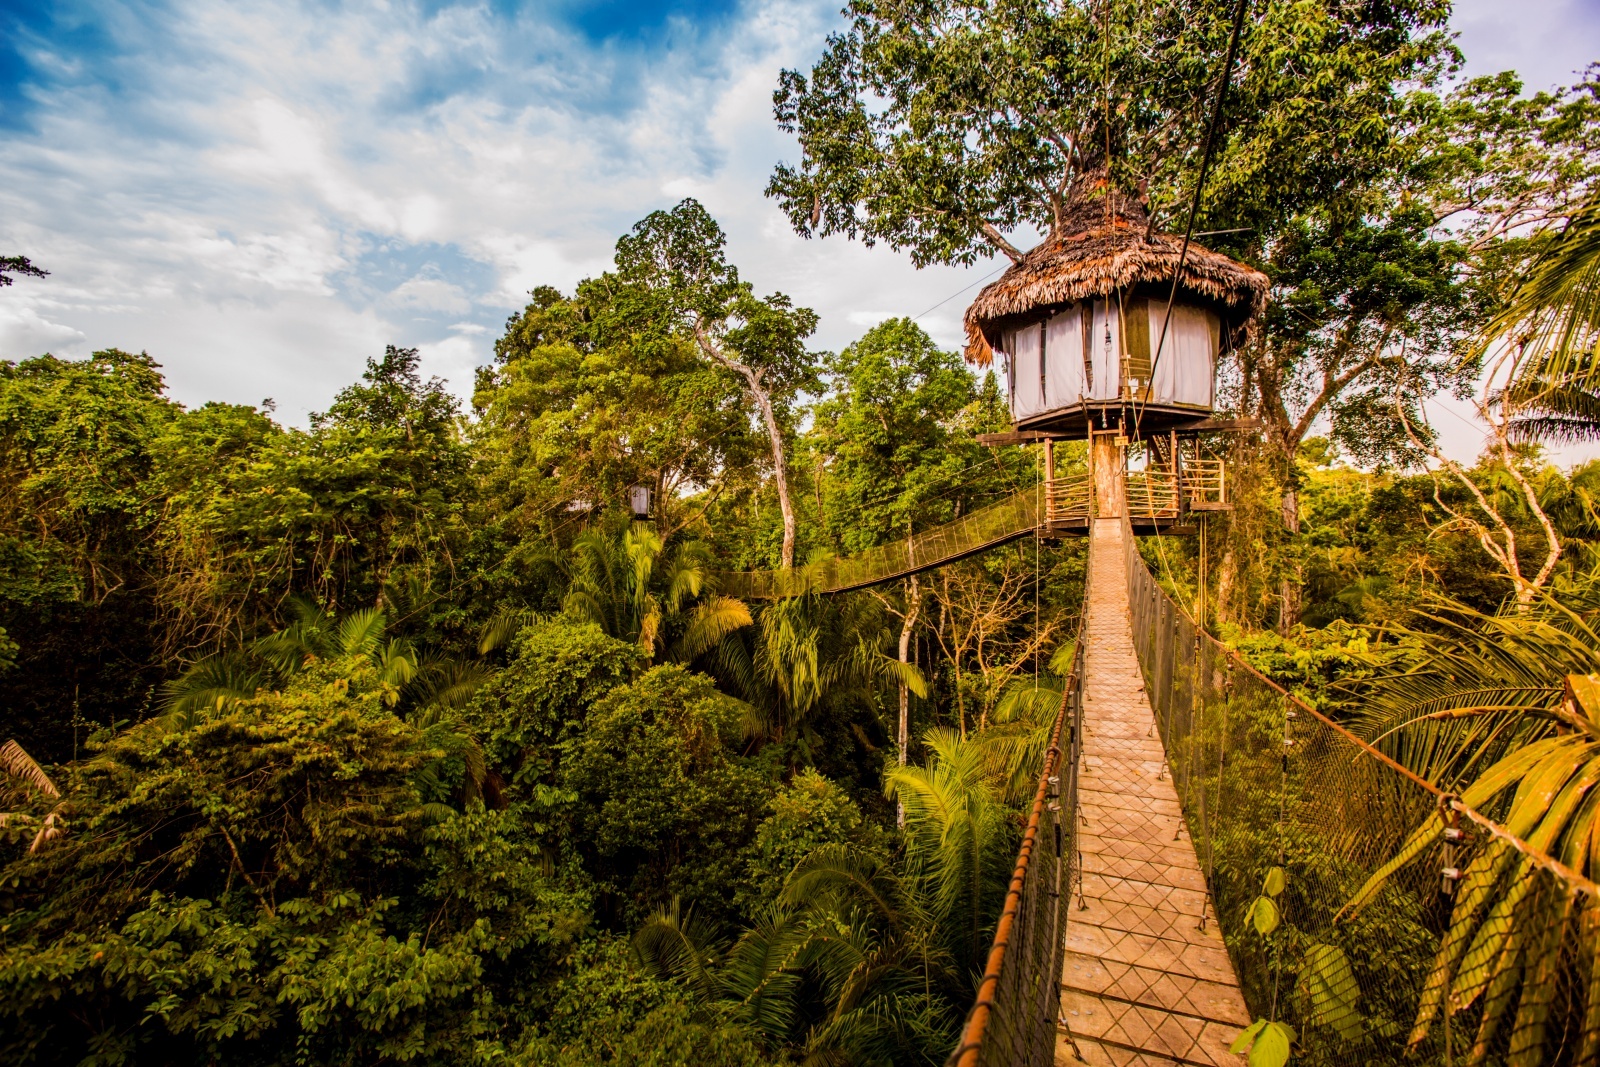 Rainforest canopy tours